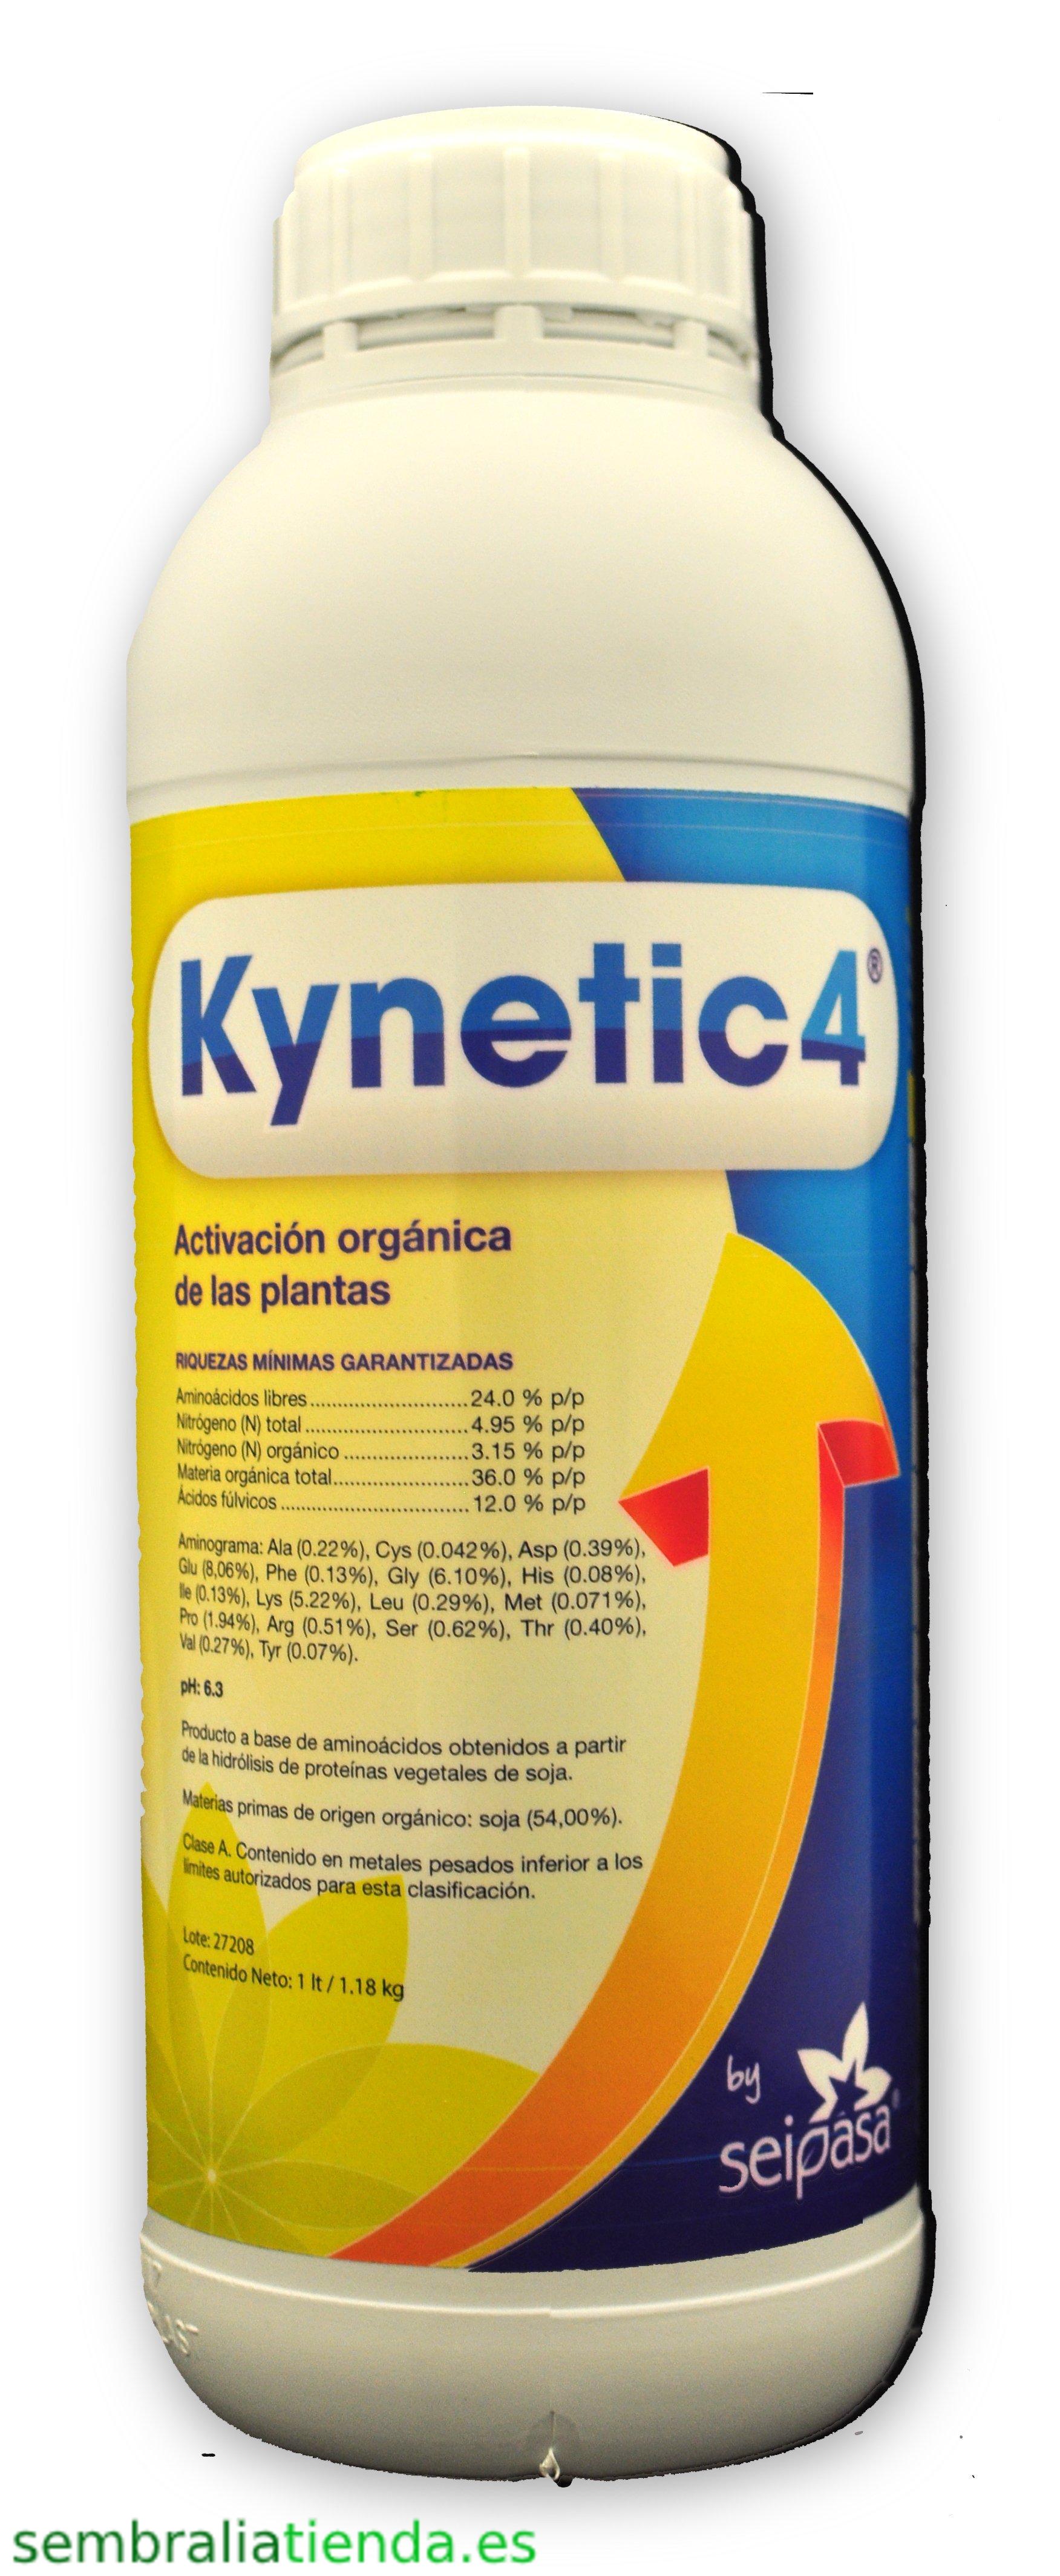 Kynetic4 - bioestimulante ecológico